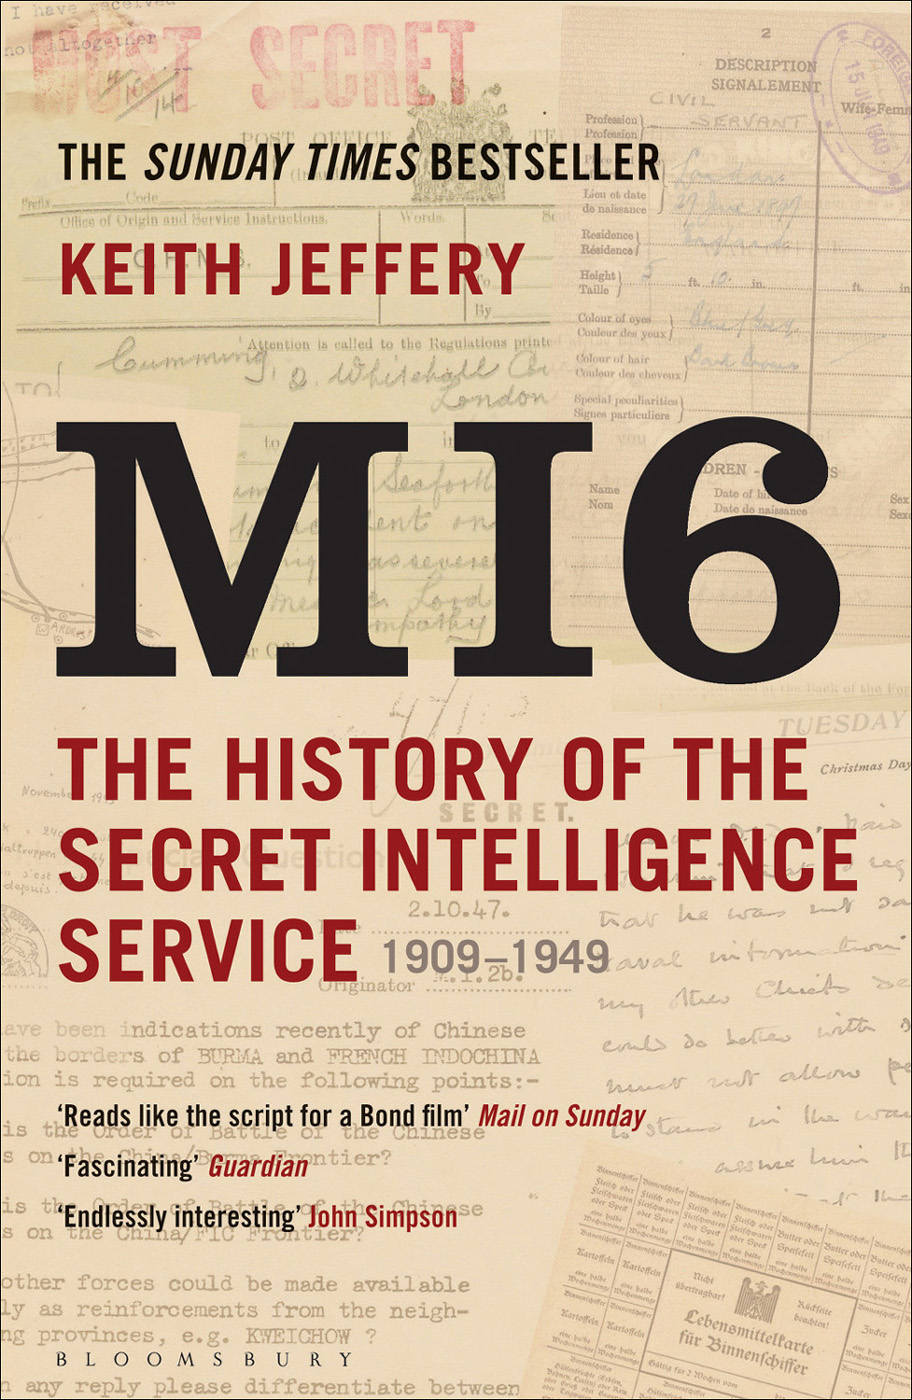 MI6: The History of the Secret Intelligence Service 1909-1949